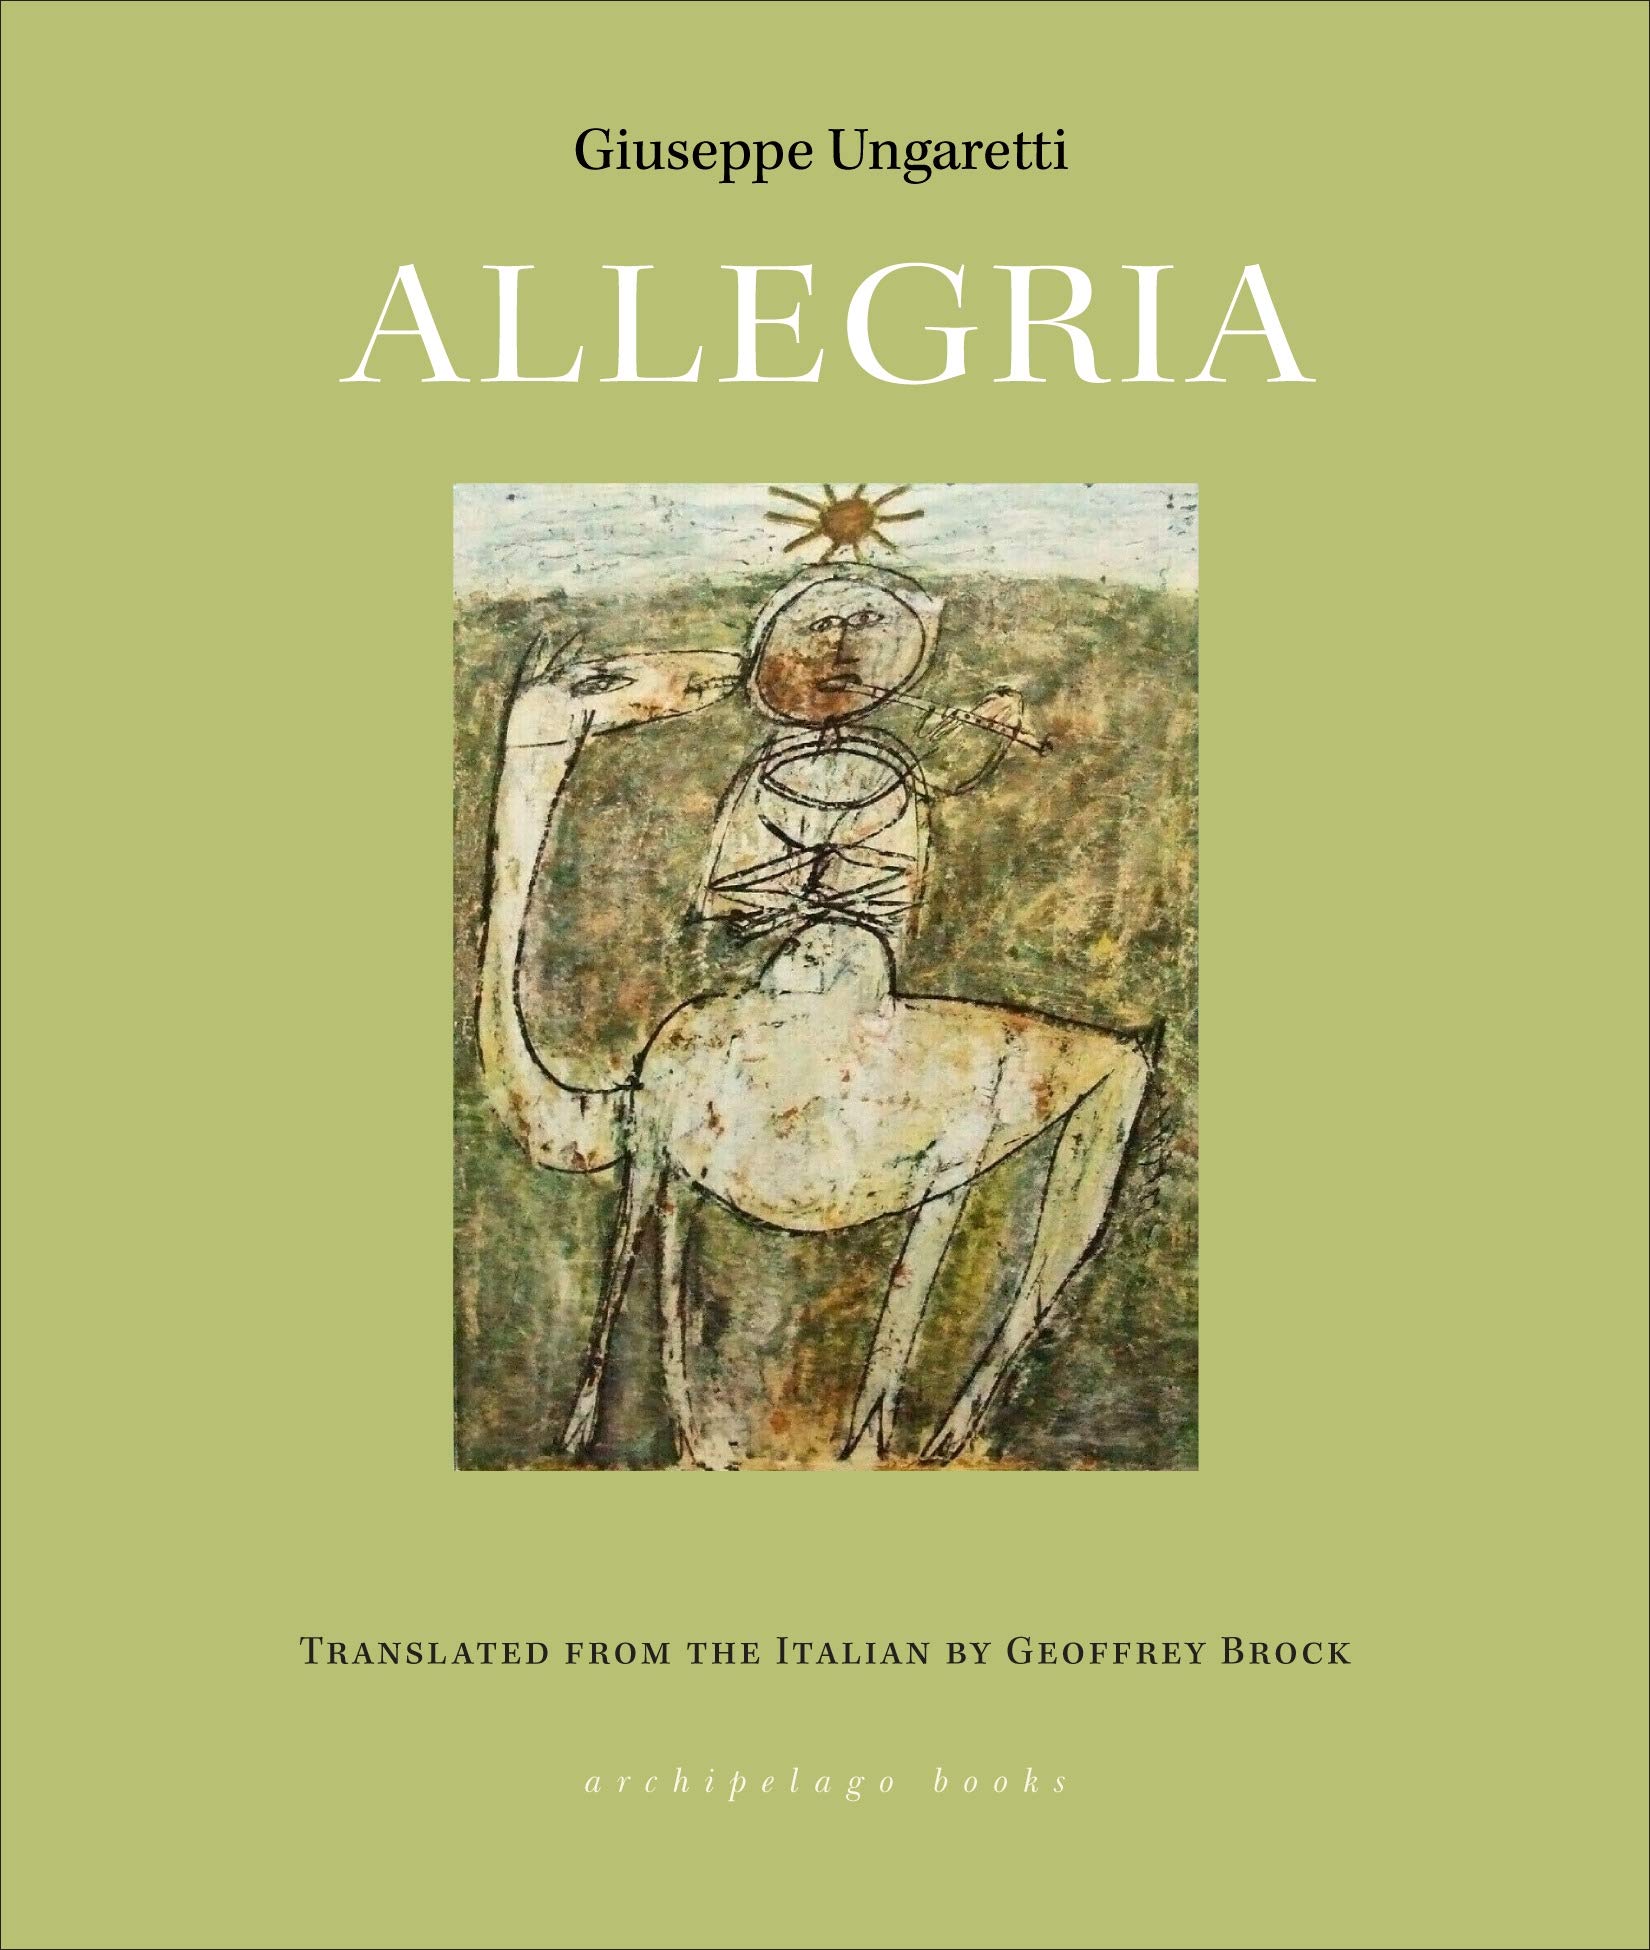 Allegria (October 2020)